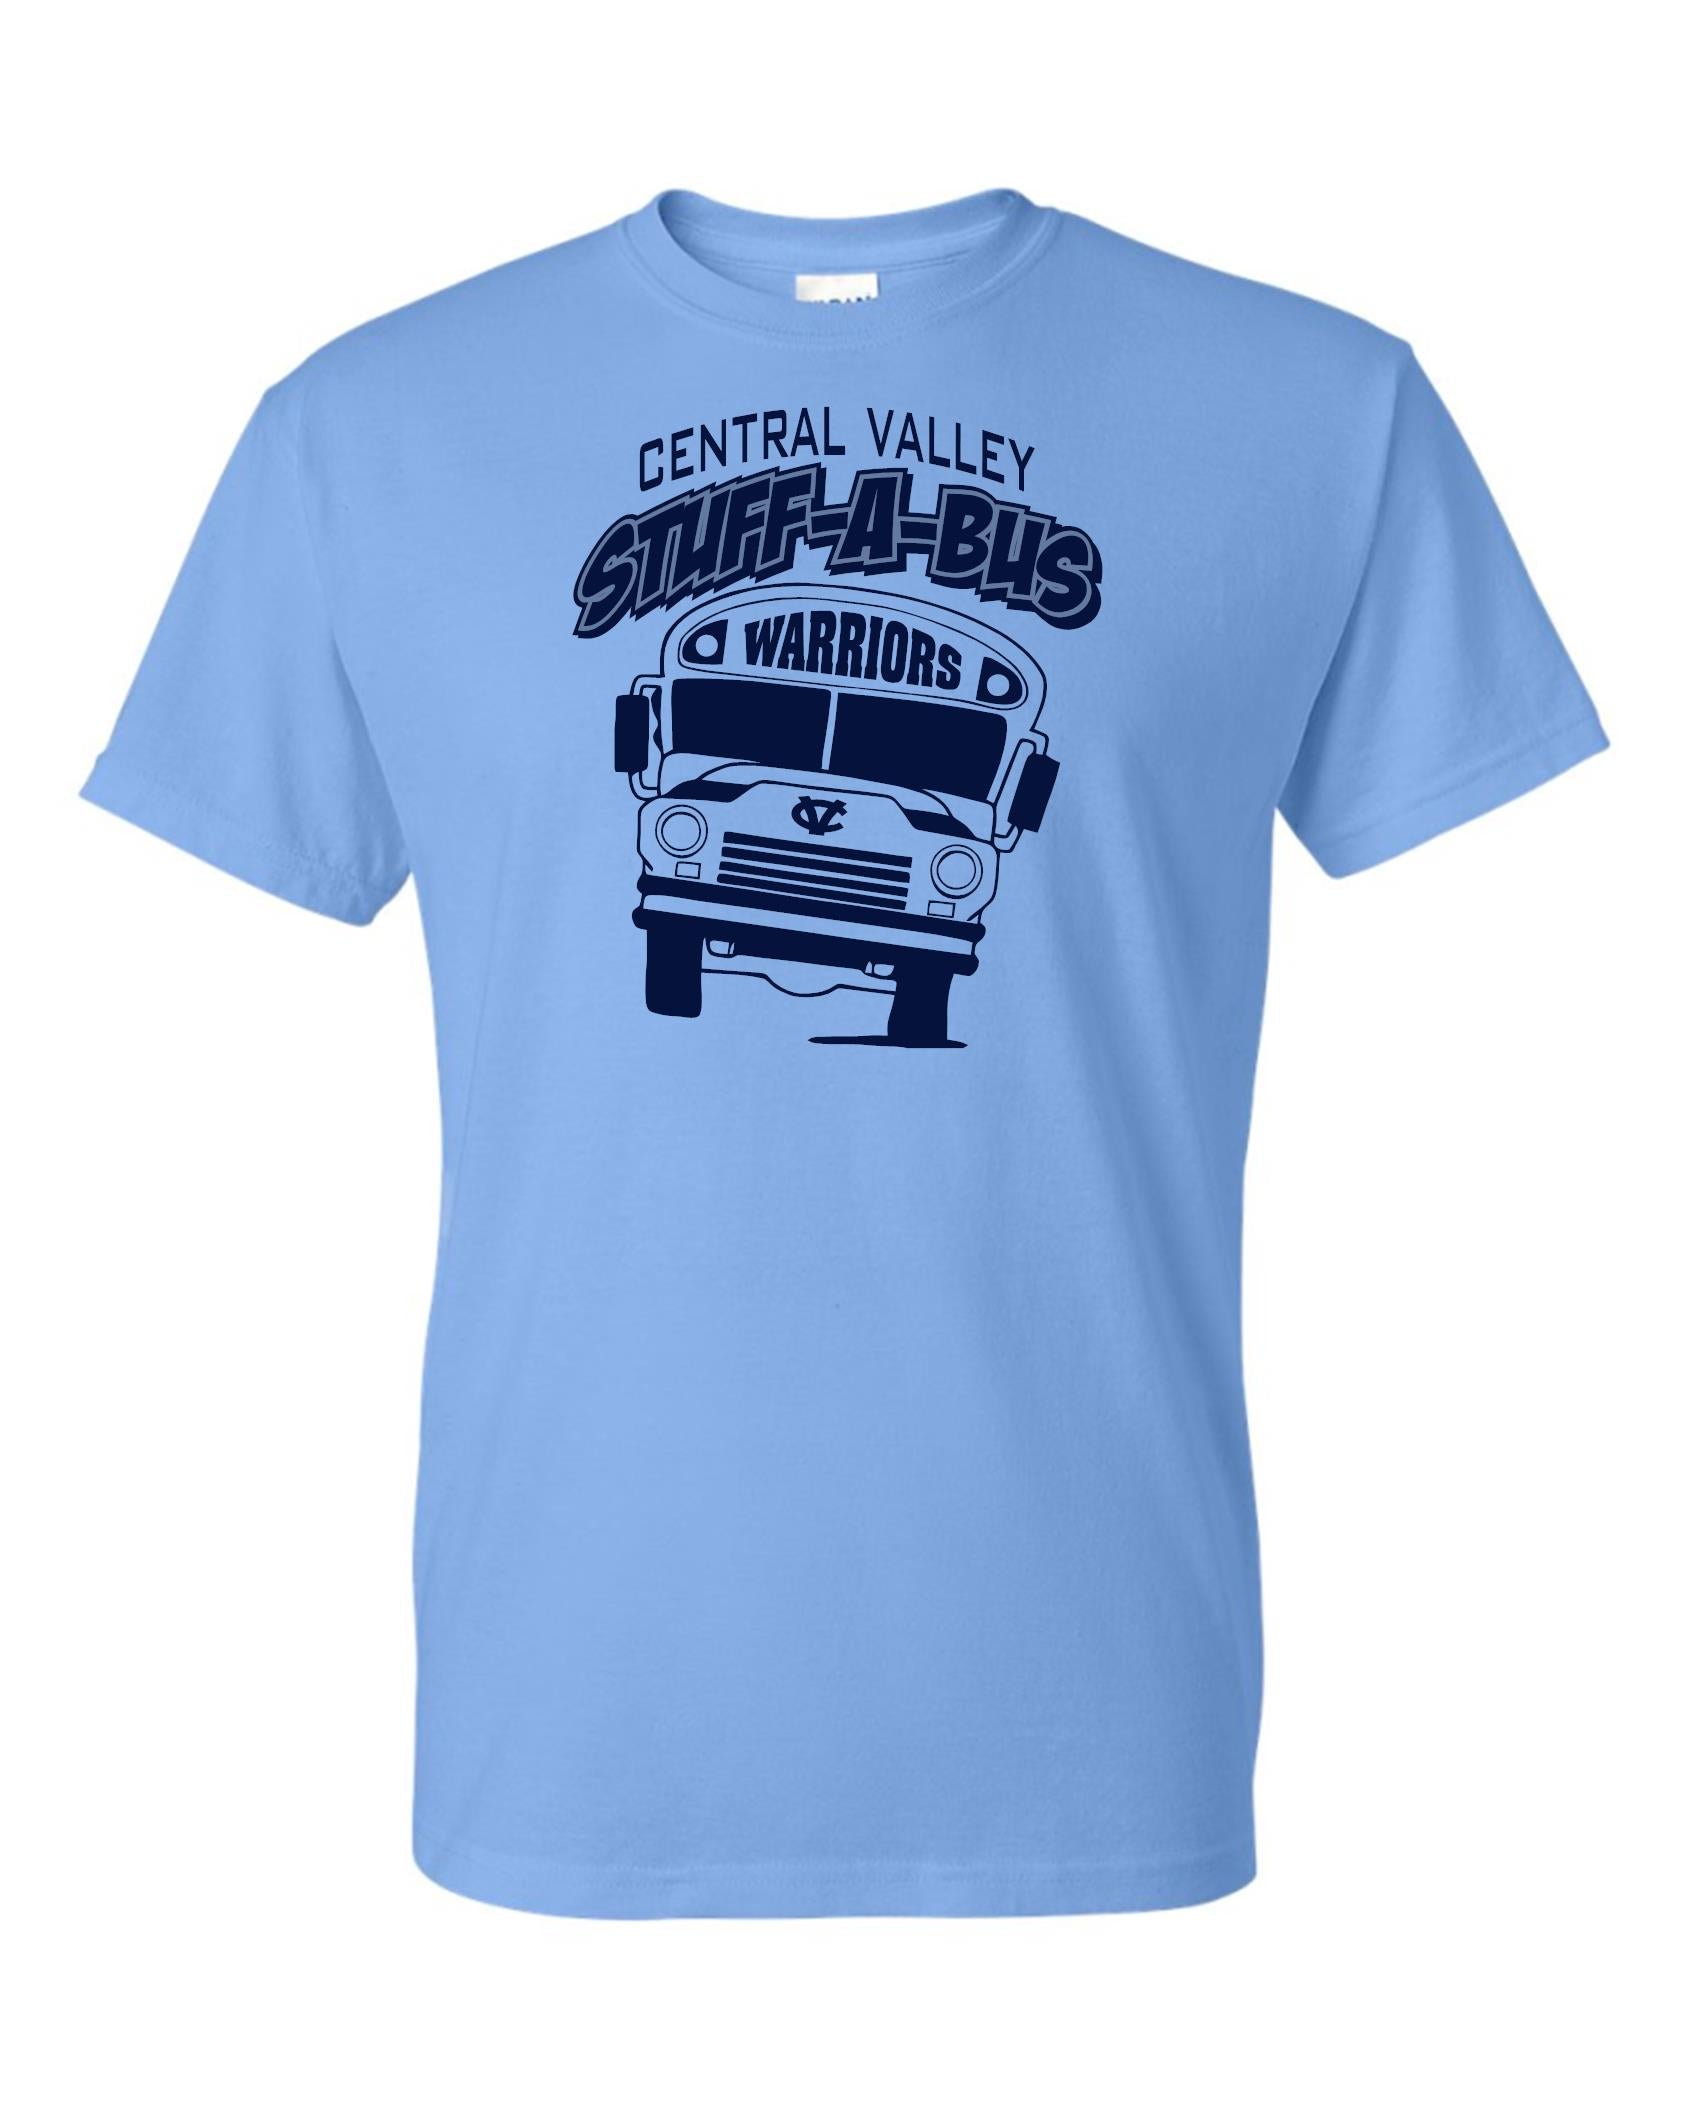 Stuff-A-Bus Tshirt